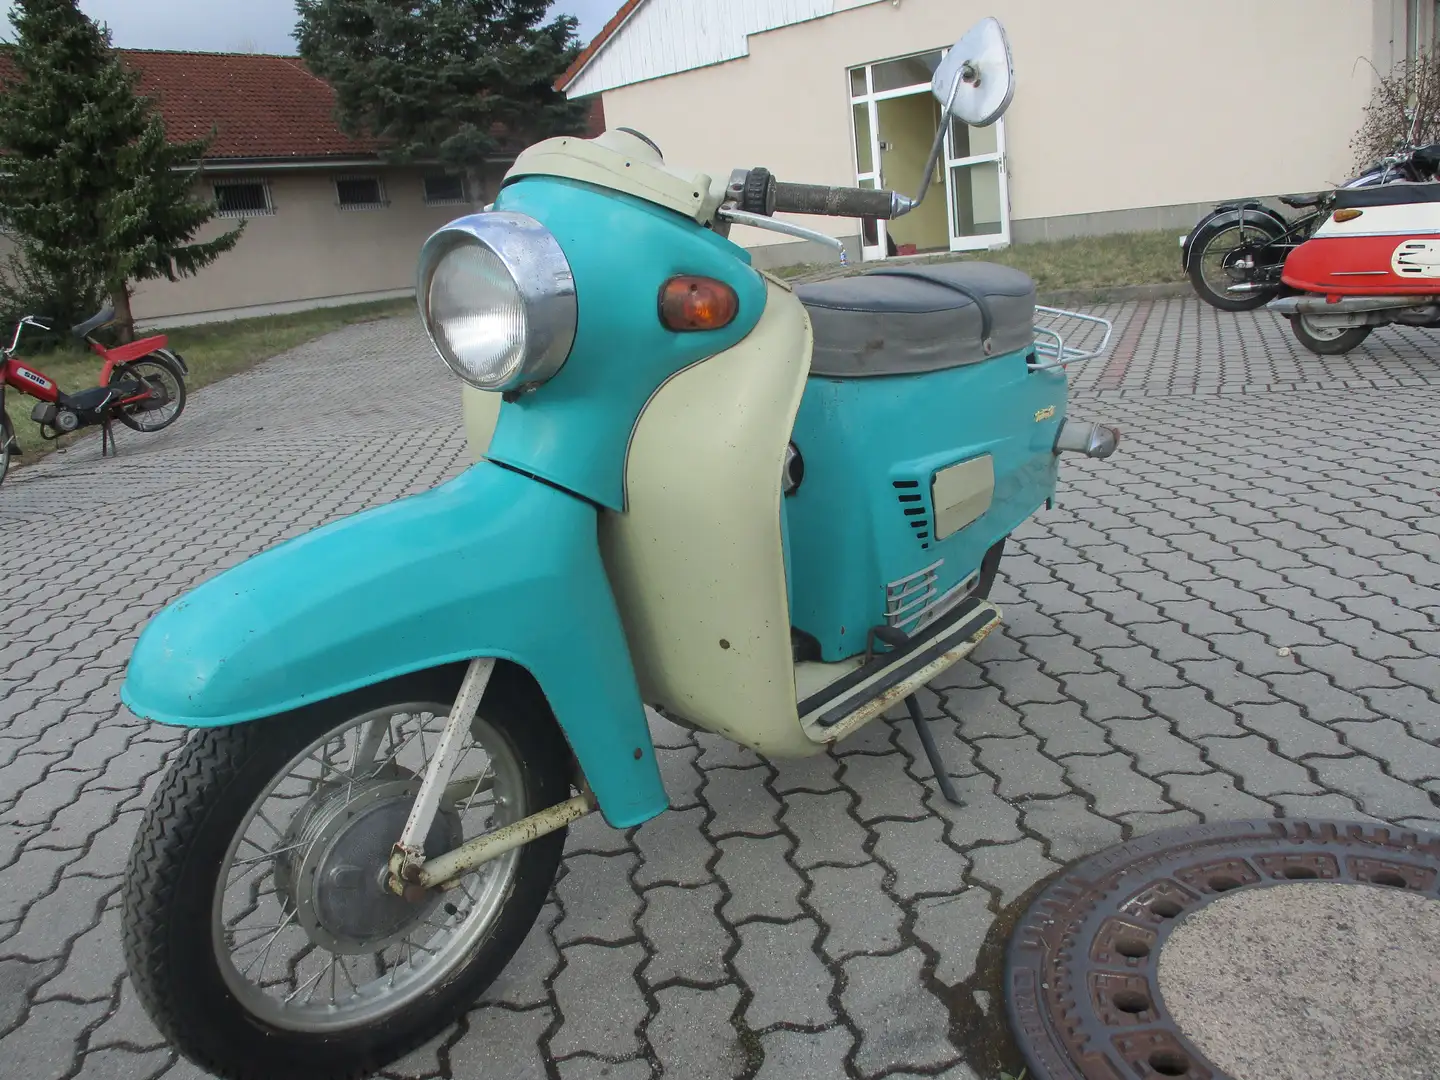 Jawa Tatran Roller Roller/Scooter in Grün gebraucht in Calau für € 2.000,-